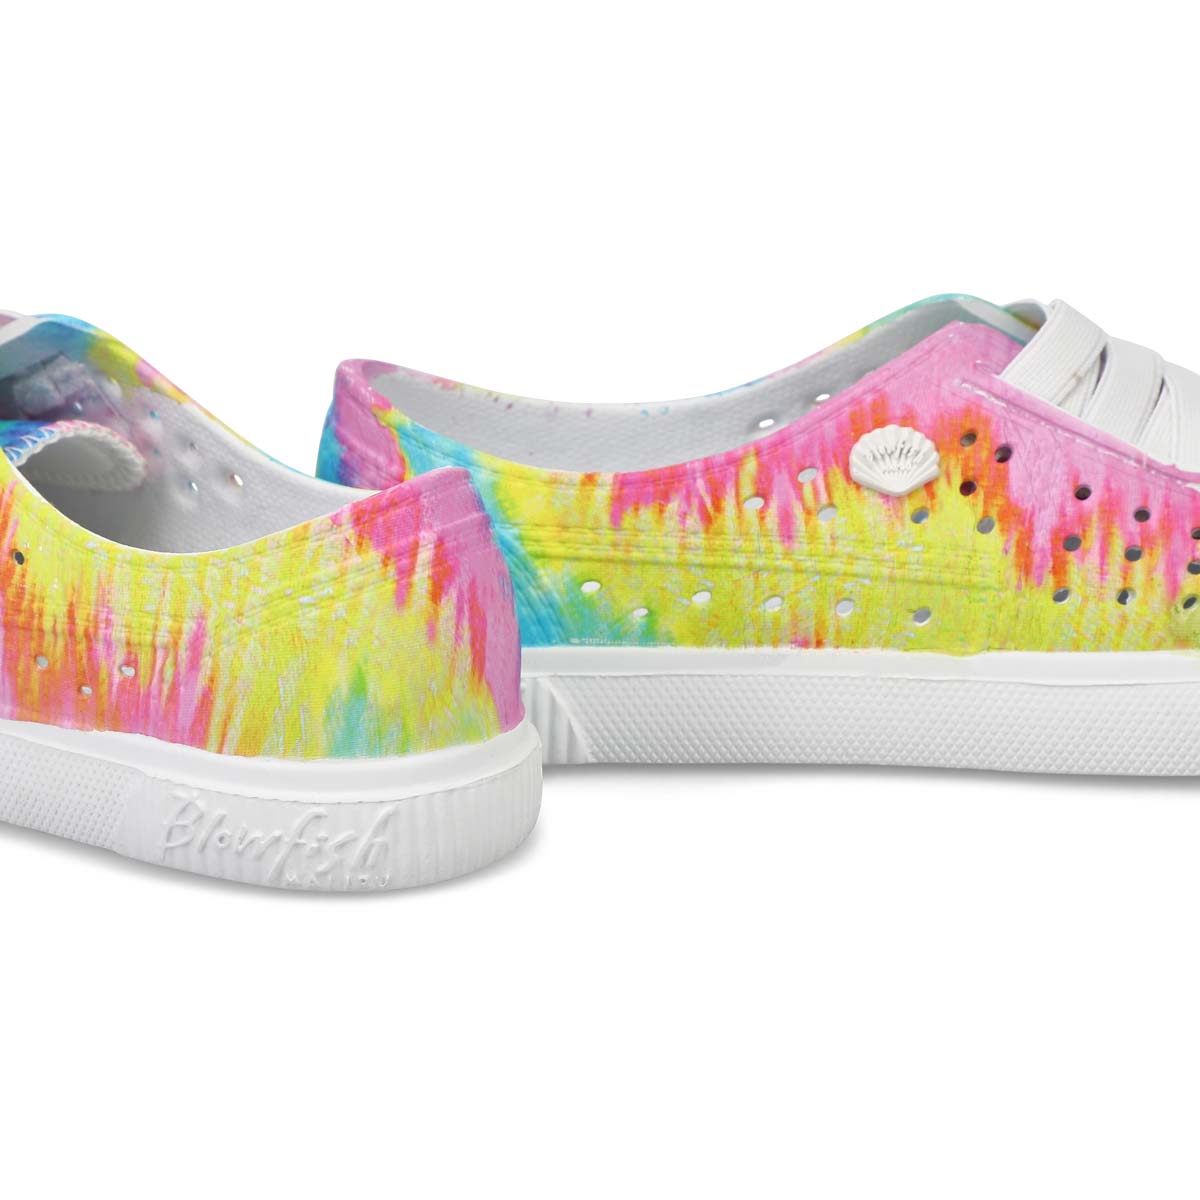 Girls' Rioo Sneakers - Pasteltie Dye